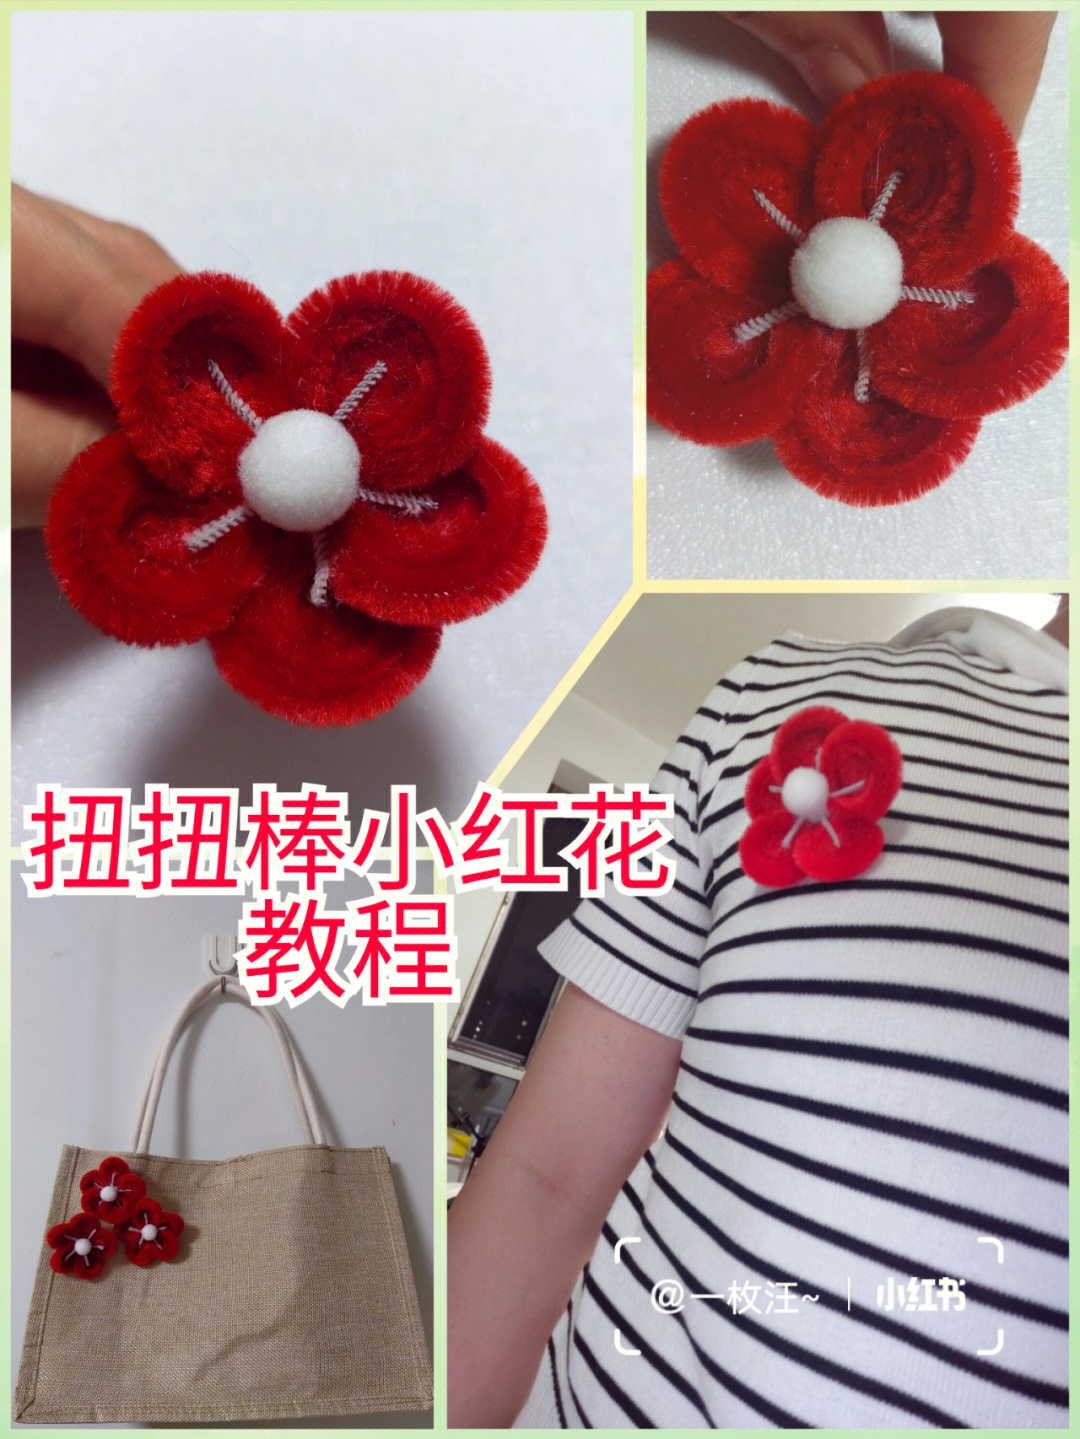 针织小红花教程图片